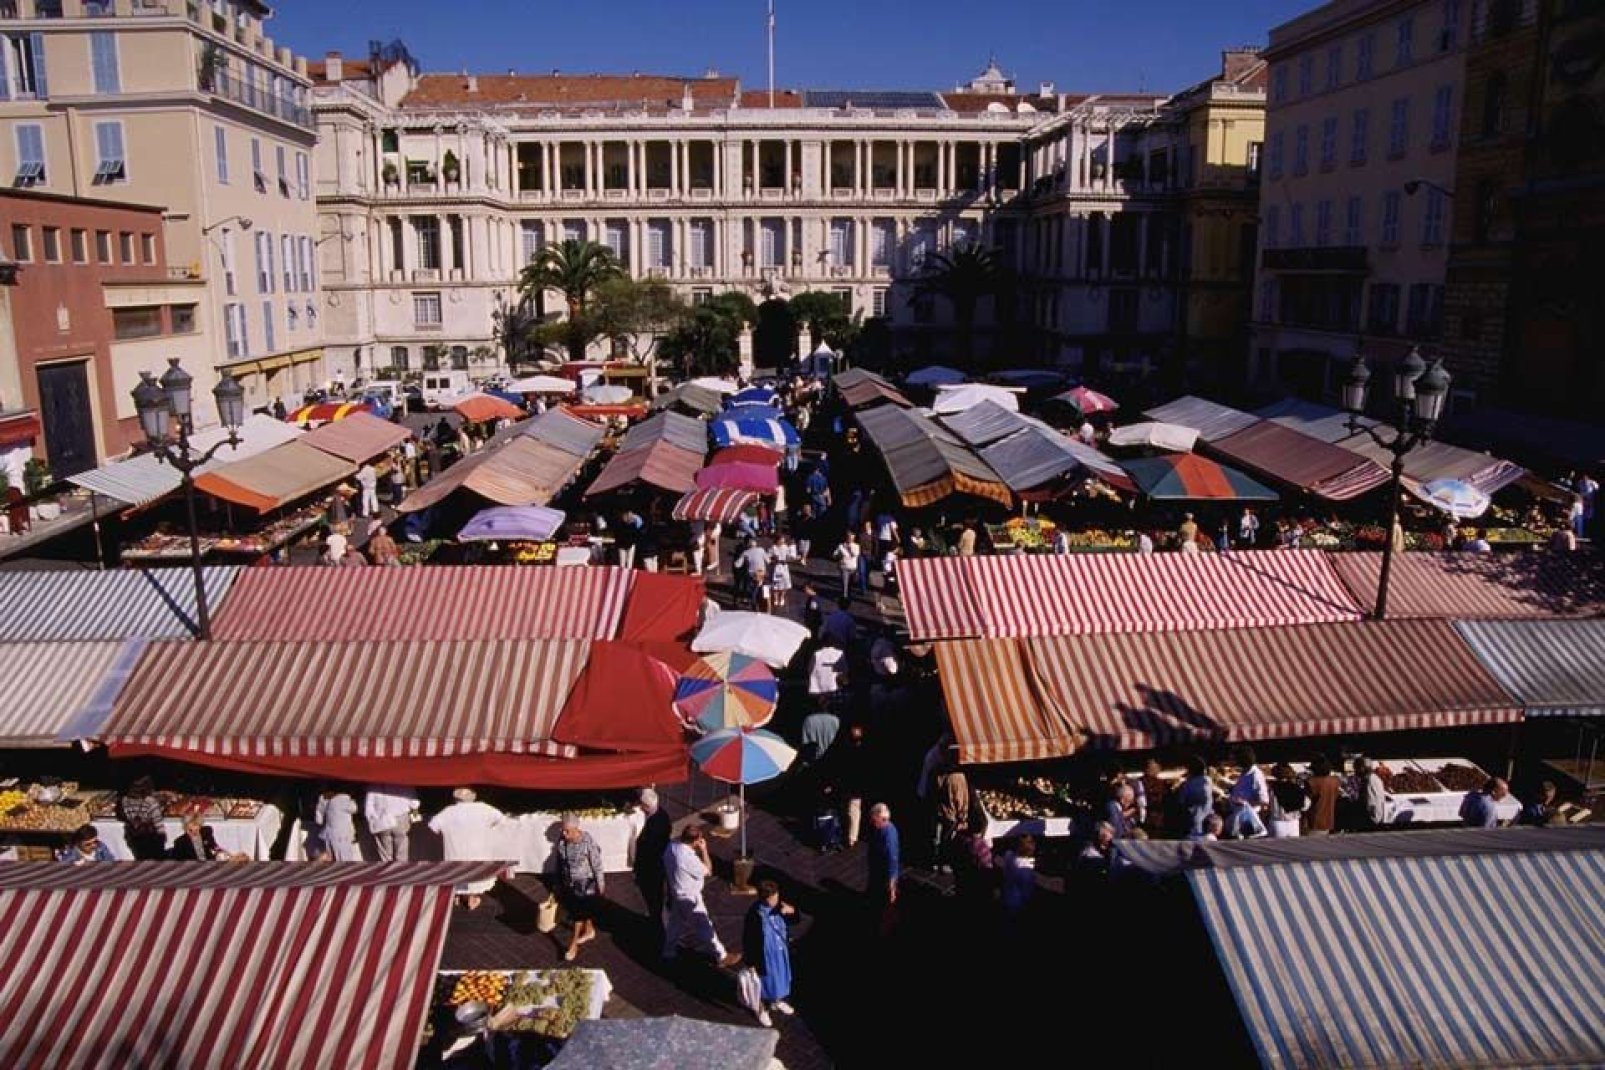 Lieux de rencontres et d'échanges, les marchés de Nice sont une tradition fermement implantée et renommée grâce à la qualité des produits frais proposés.